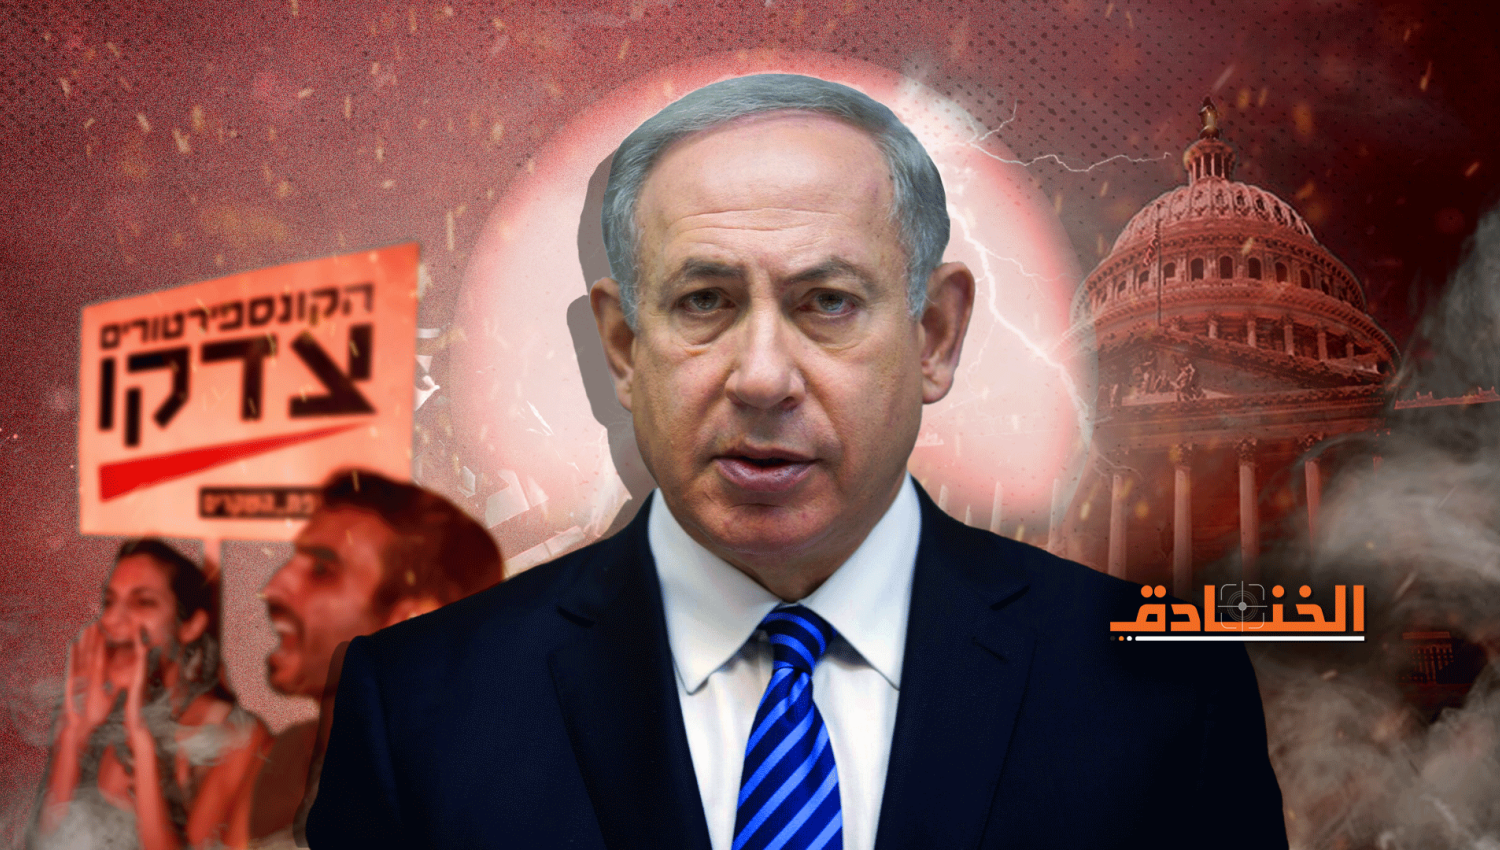 هآرتس: قد تتخذ واشنطن خطوات ضد إسرائيل في مجلس الأمن